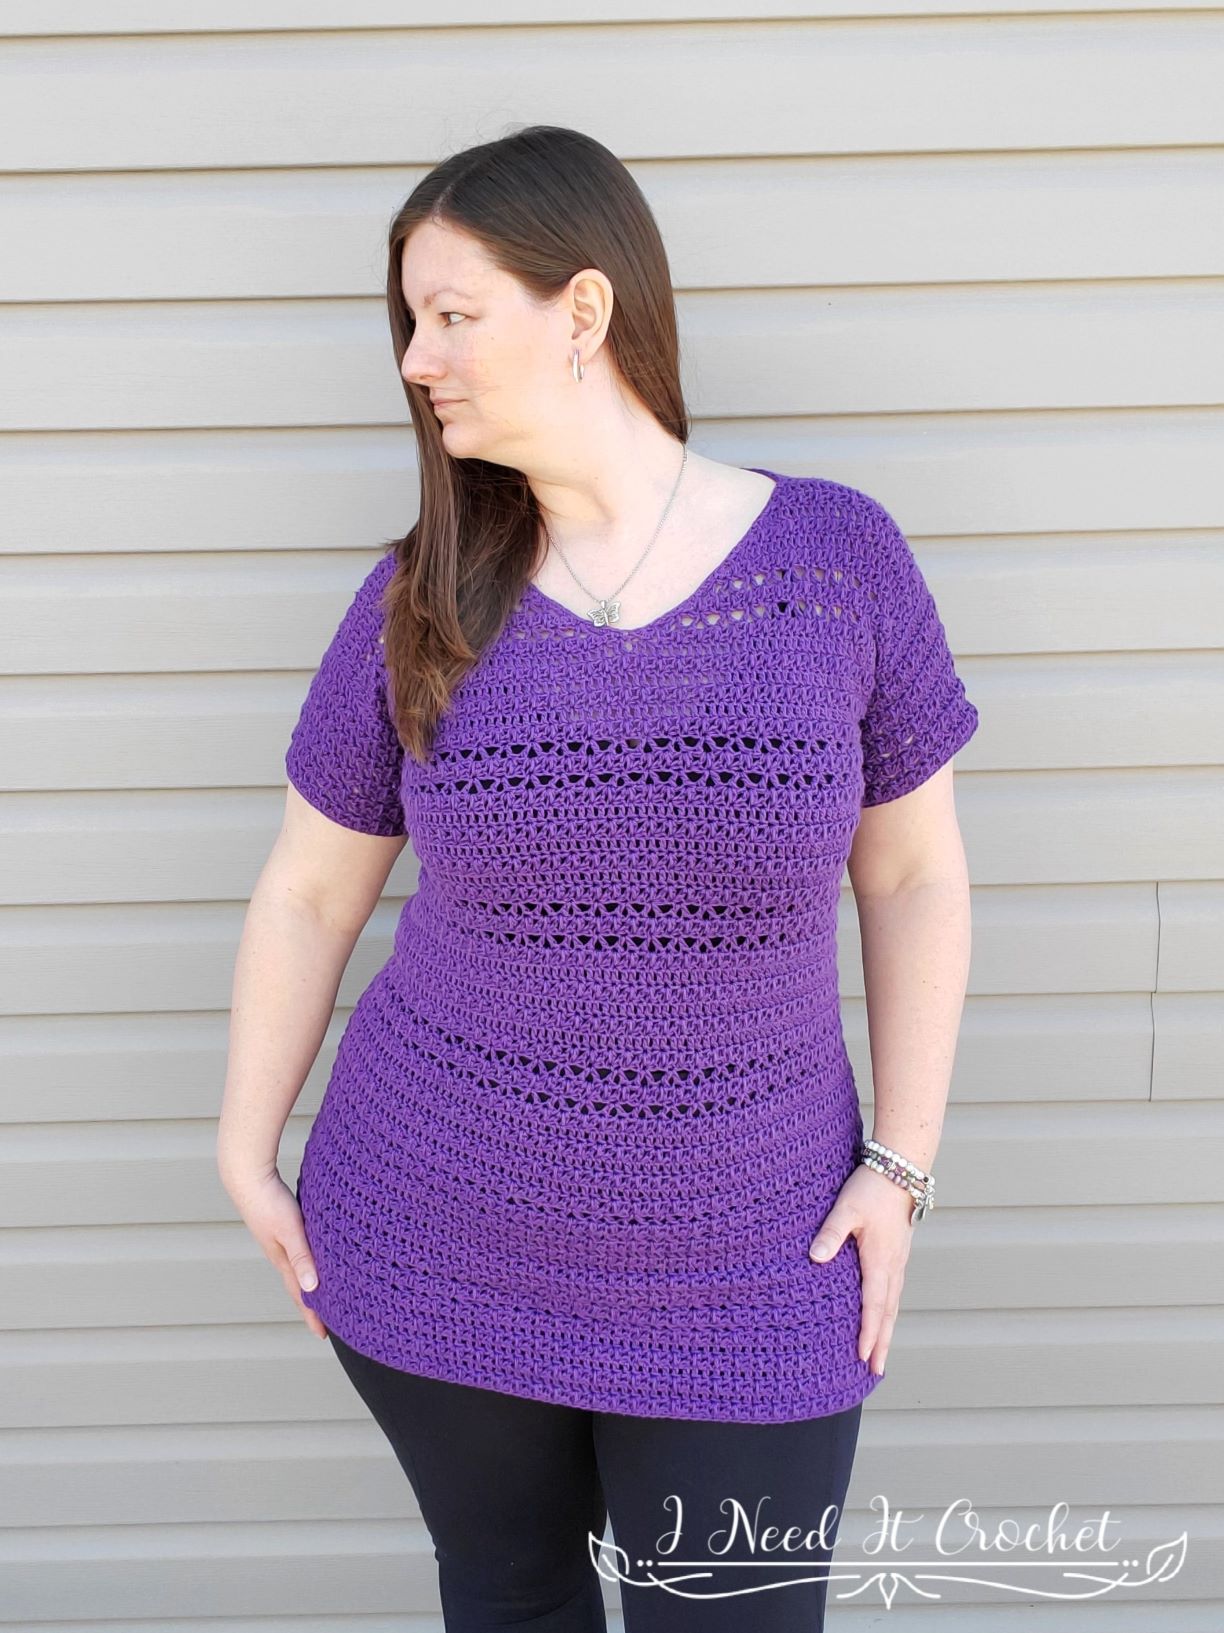 Hilo Tunic - Free Crochet Top Pattern · I Need It Crochet Designs